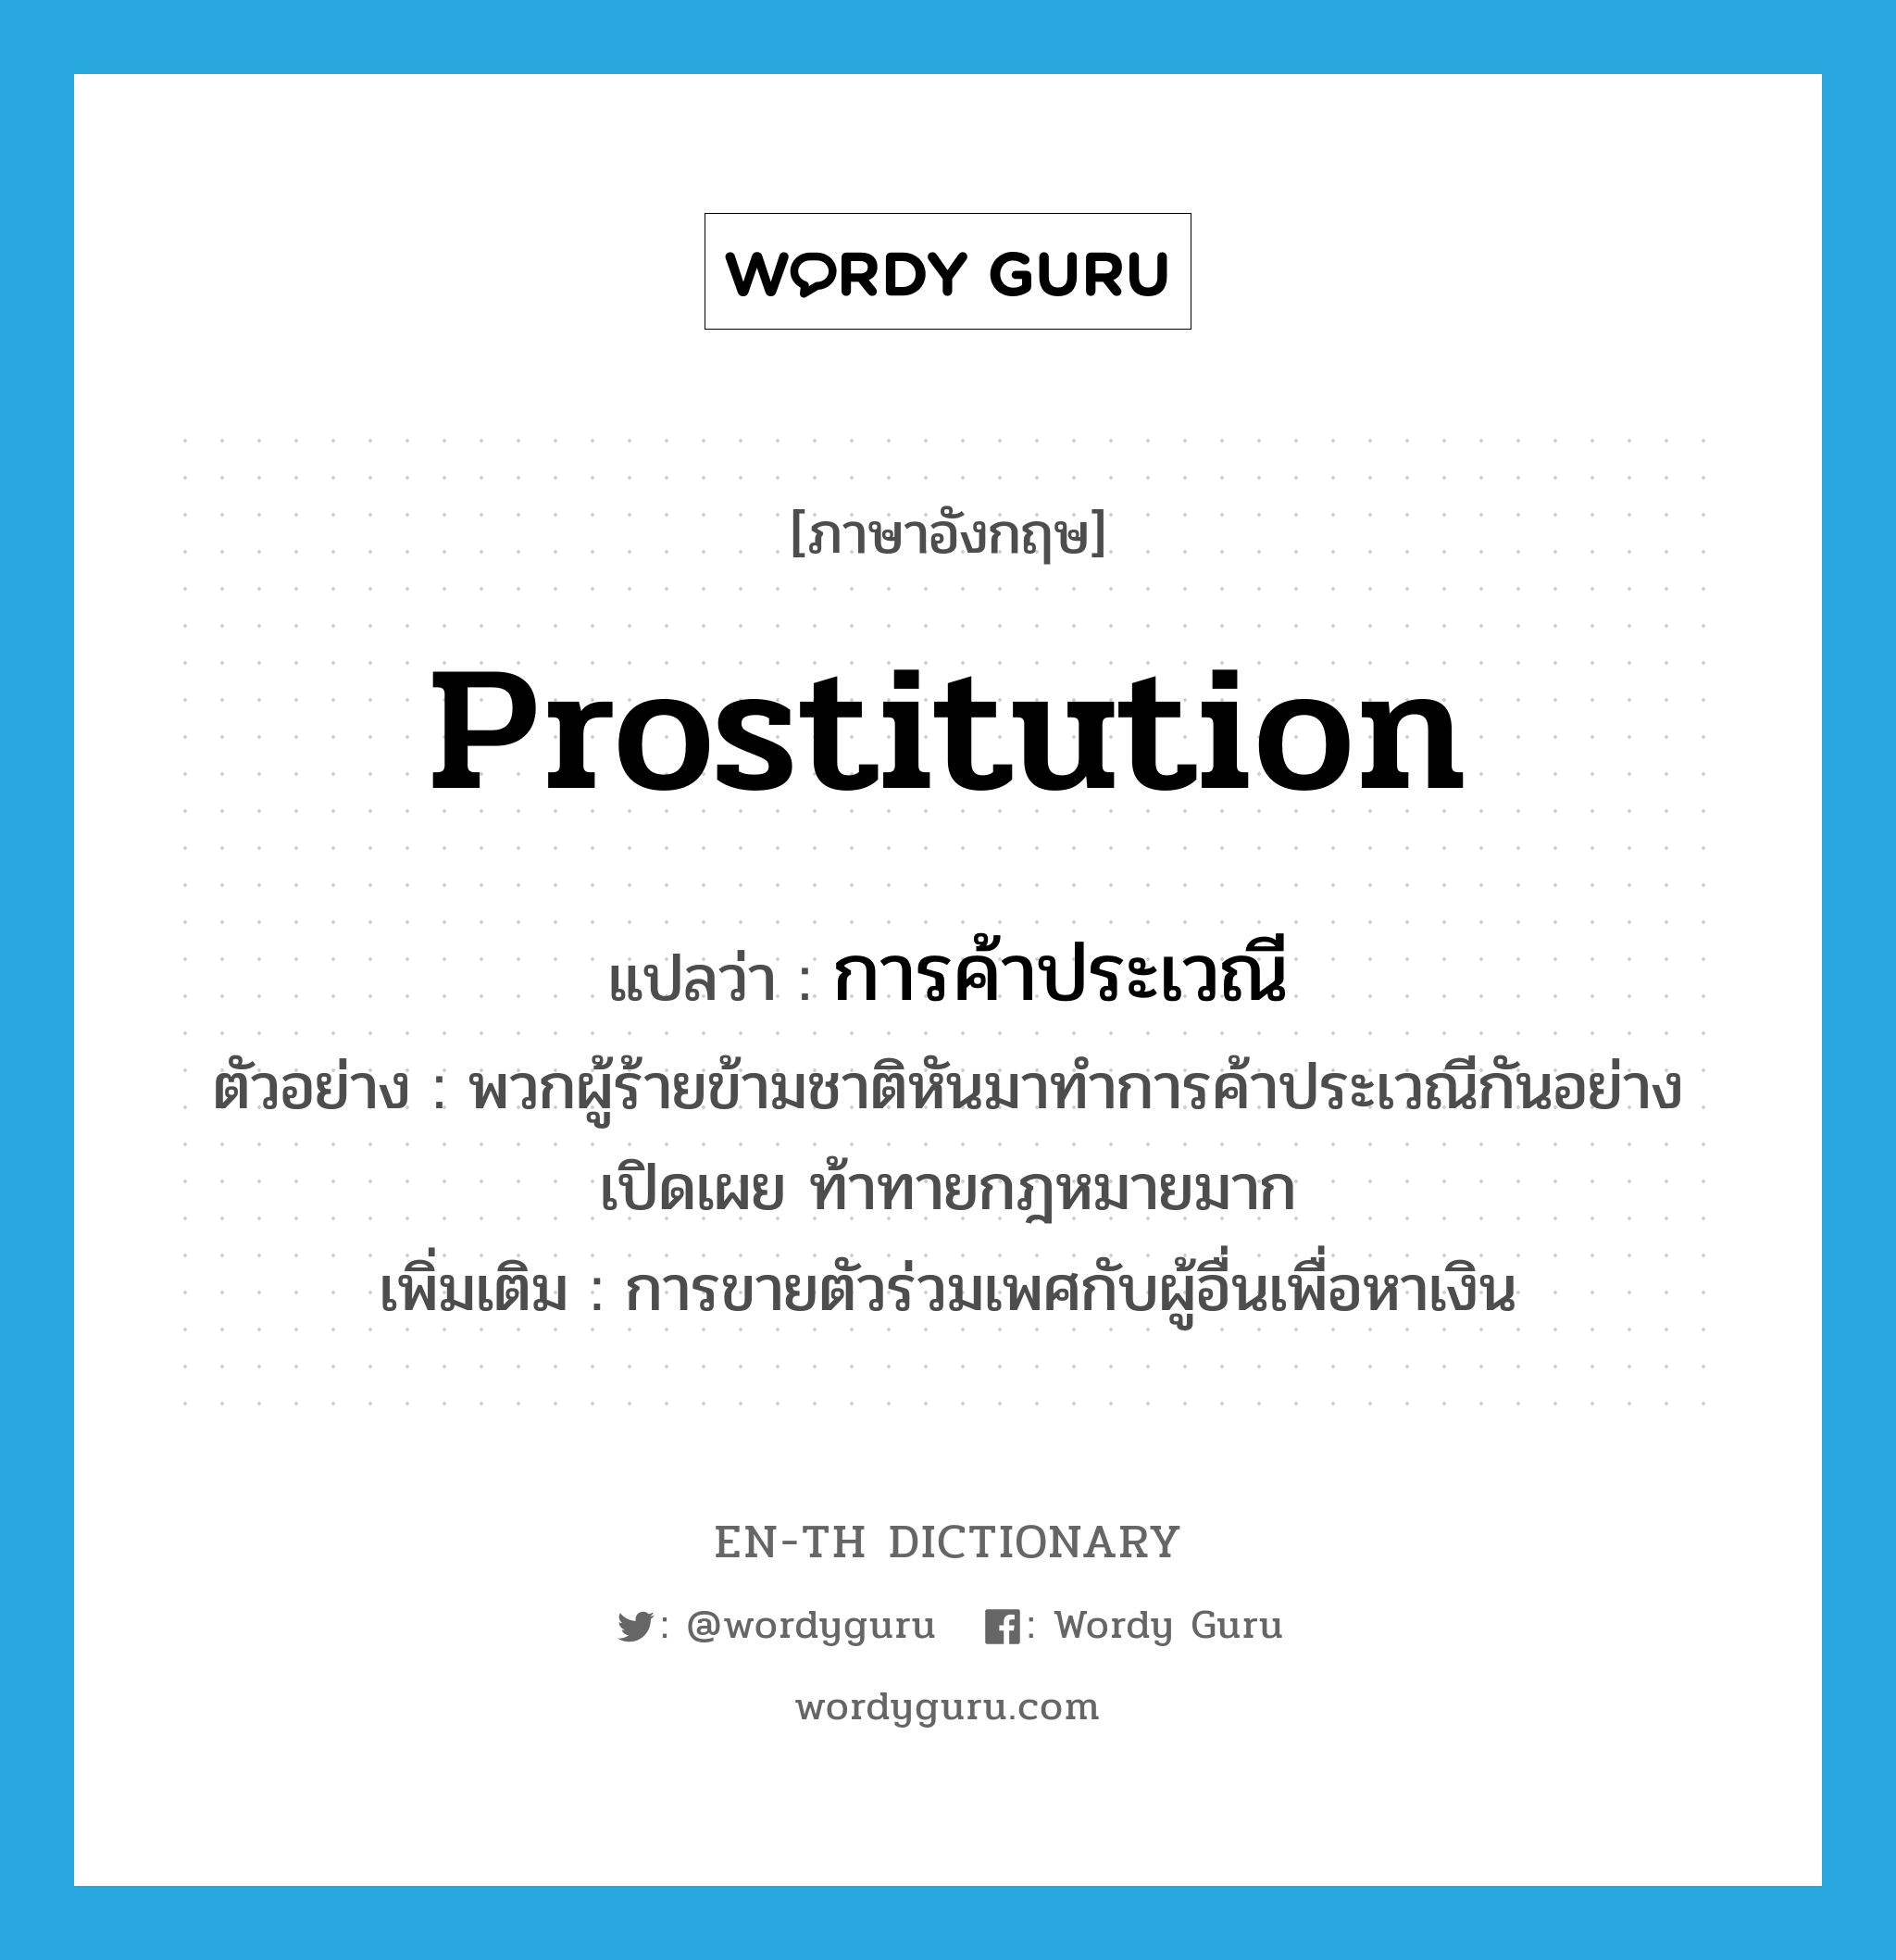 การค้าประเวณี ภาษาอังกฤษ?, คำศัพท์ภาษาอังกฤษ การค้าประเวณี แปลว่า prostitution ประเภท N ตัวอย่าง พวกผู้ร้ายข้ามชาติหันมาทำการค้าประเวณีกันอย่างเปิดเผย ท้าทายกฎหมายมาก เพิ่มเติม การขายตัวร่วมเพศกับผู้อื่นเพื่อหาเงิน หมวด N